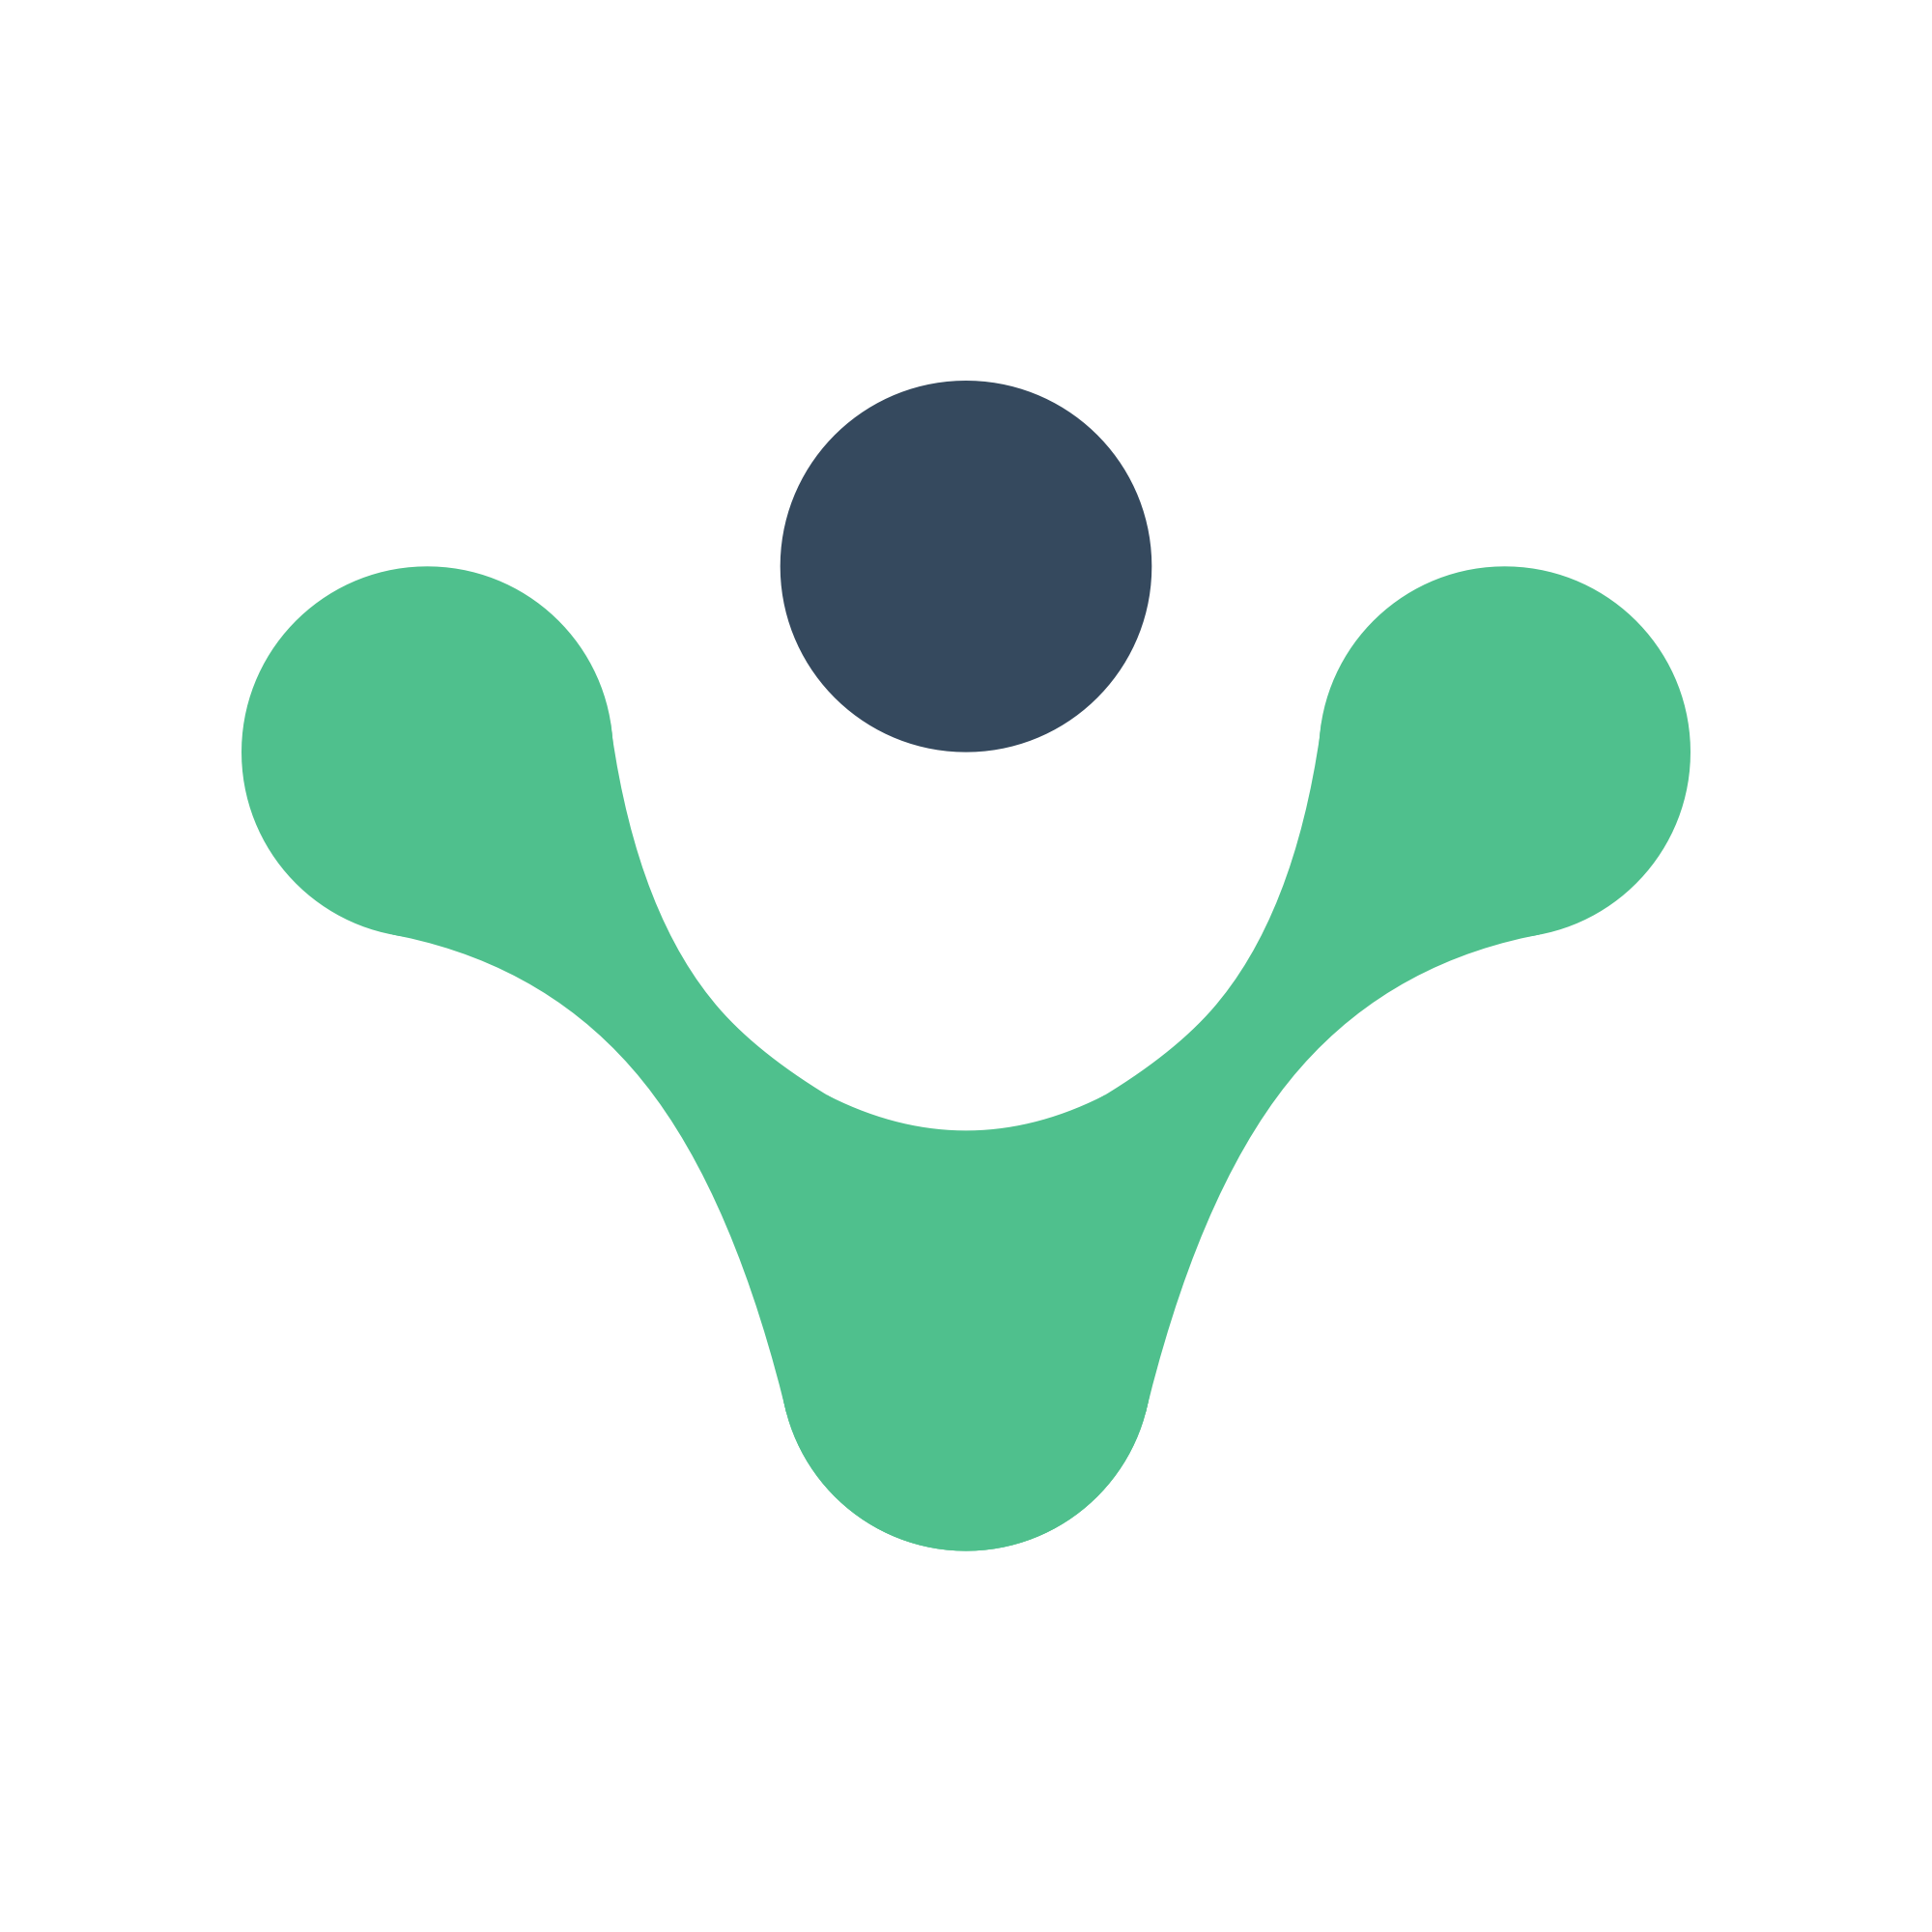 Vue_Router_logo